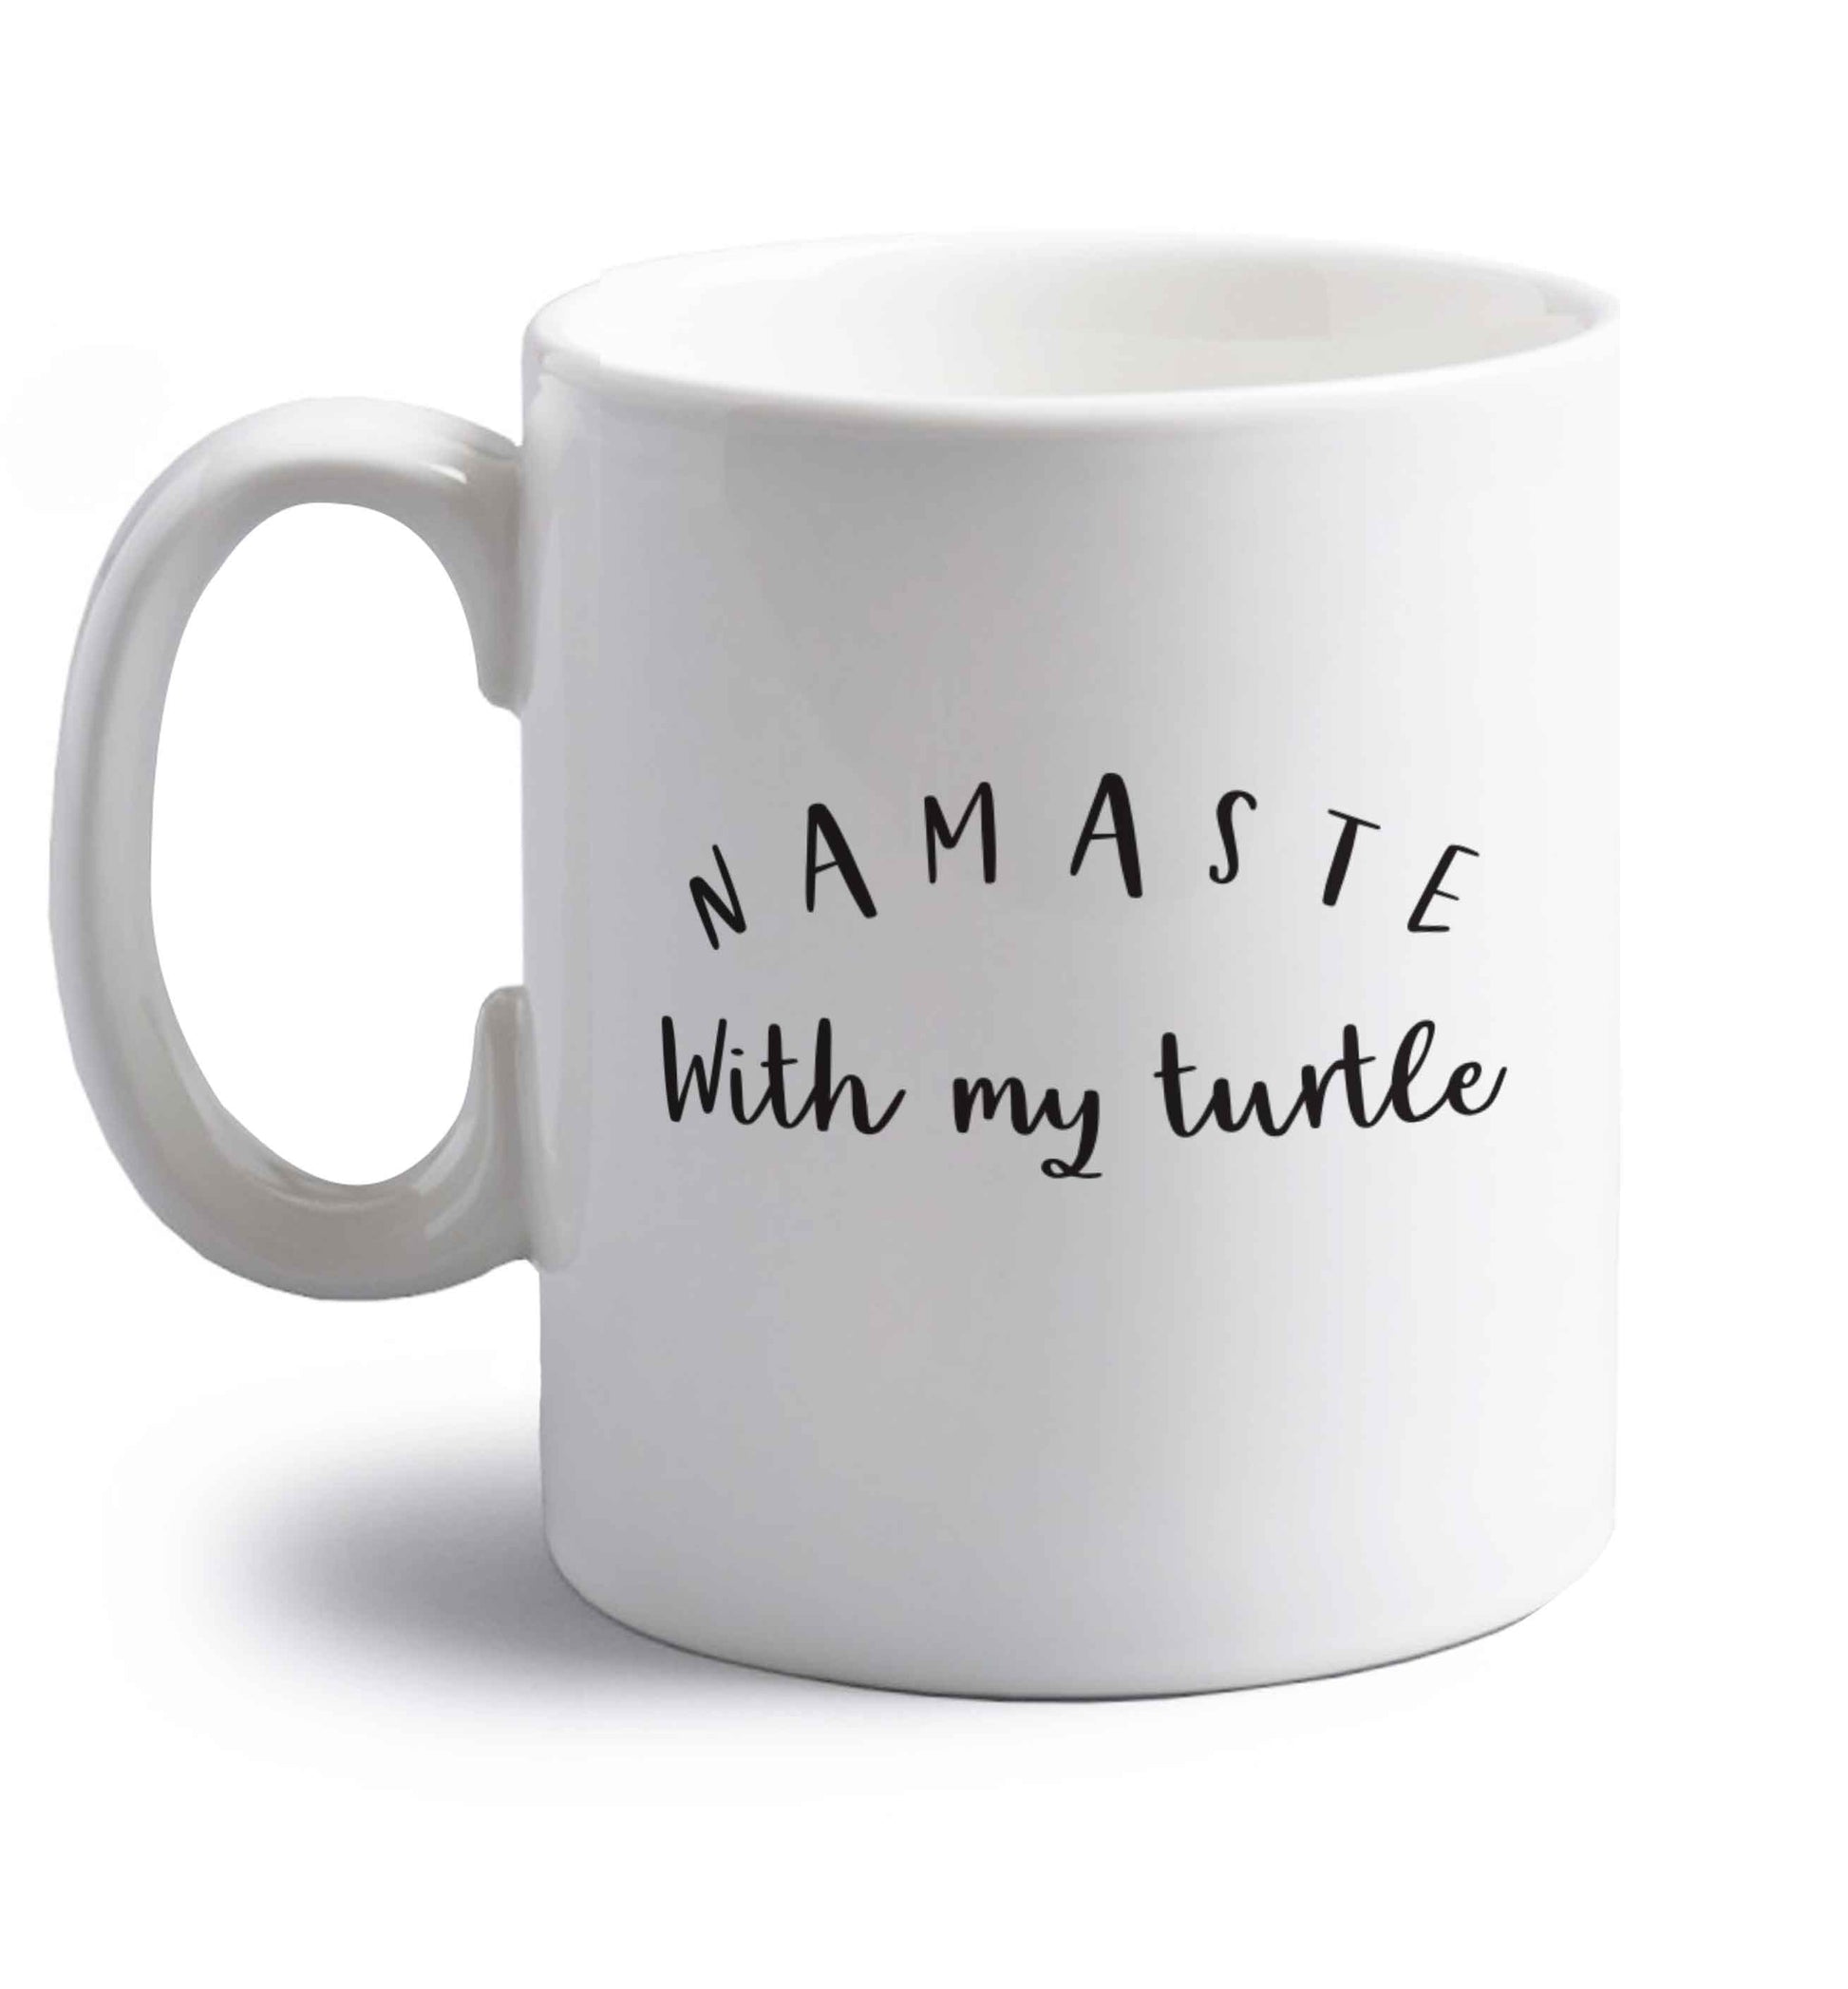 Namaste with my turtle right handed white ceramic mug 